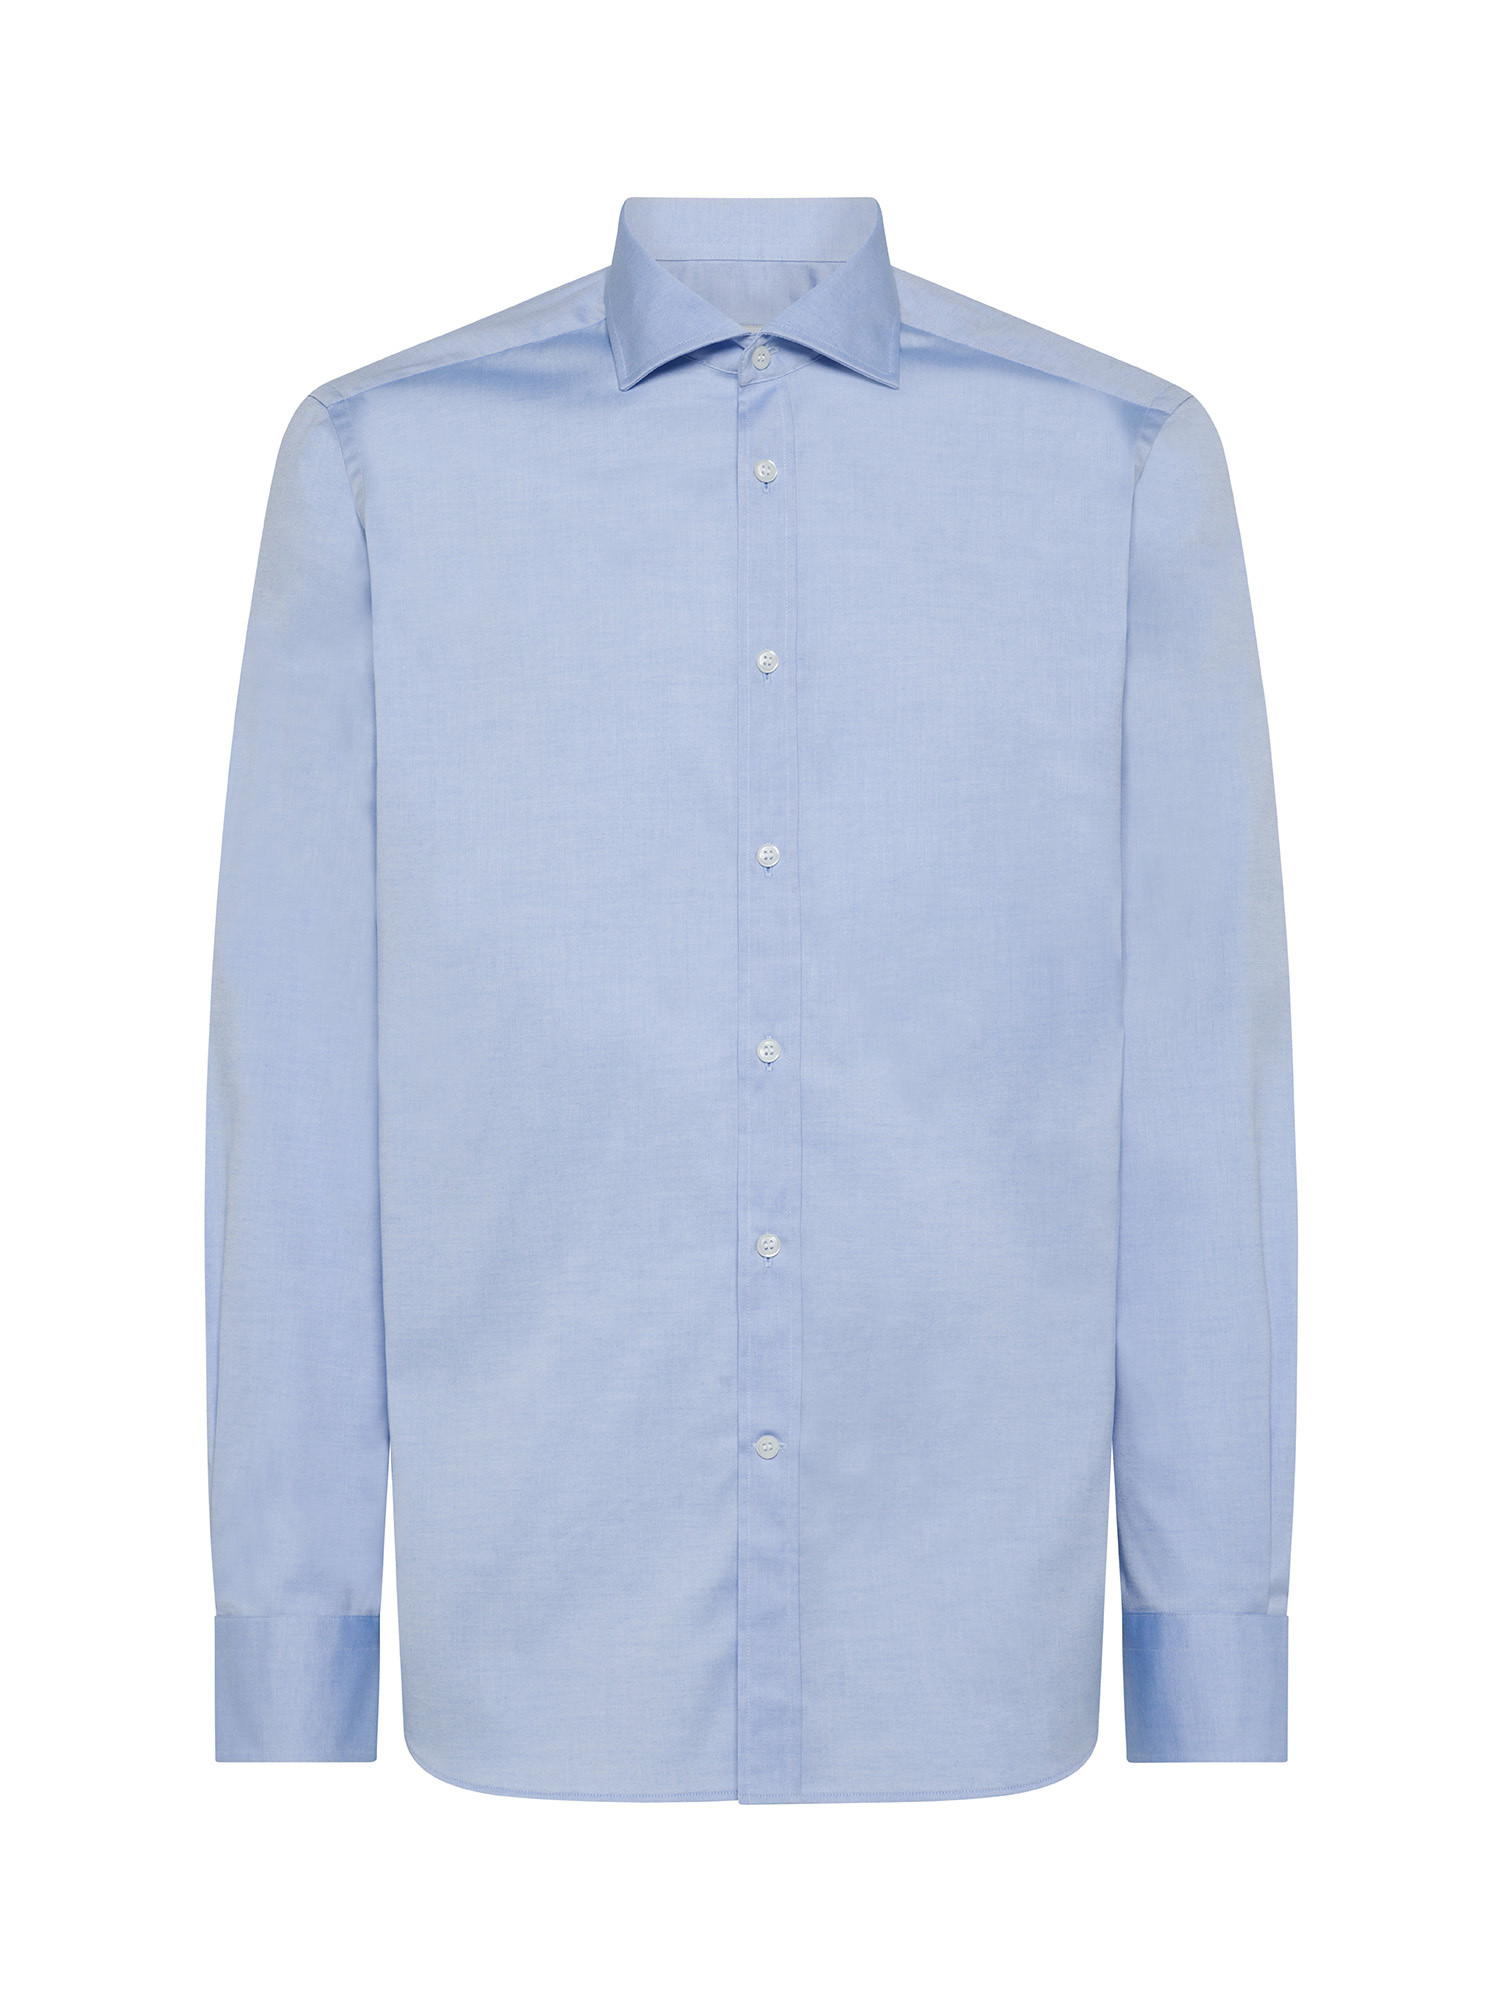 Luca D'Altieri - Camicia slim fit in cotone elasticizzato, Azzurro, large image number 0